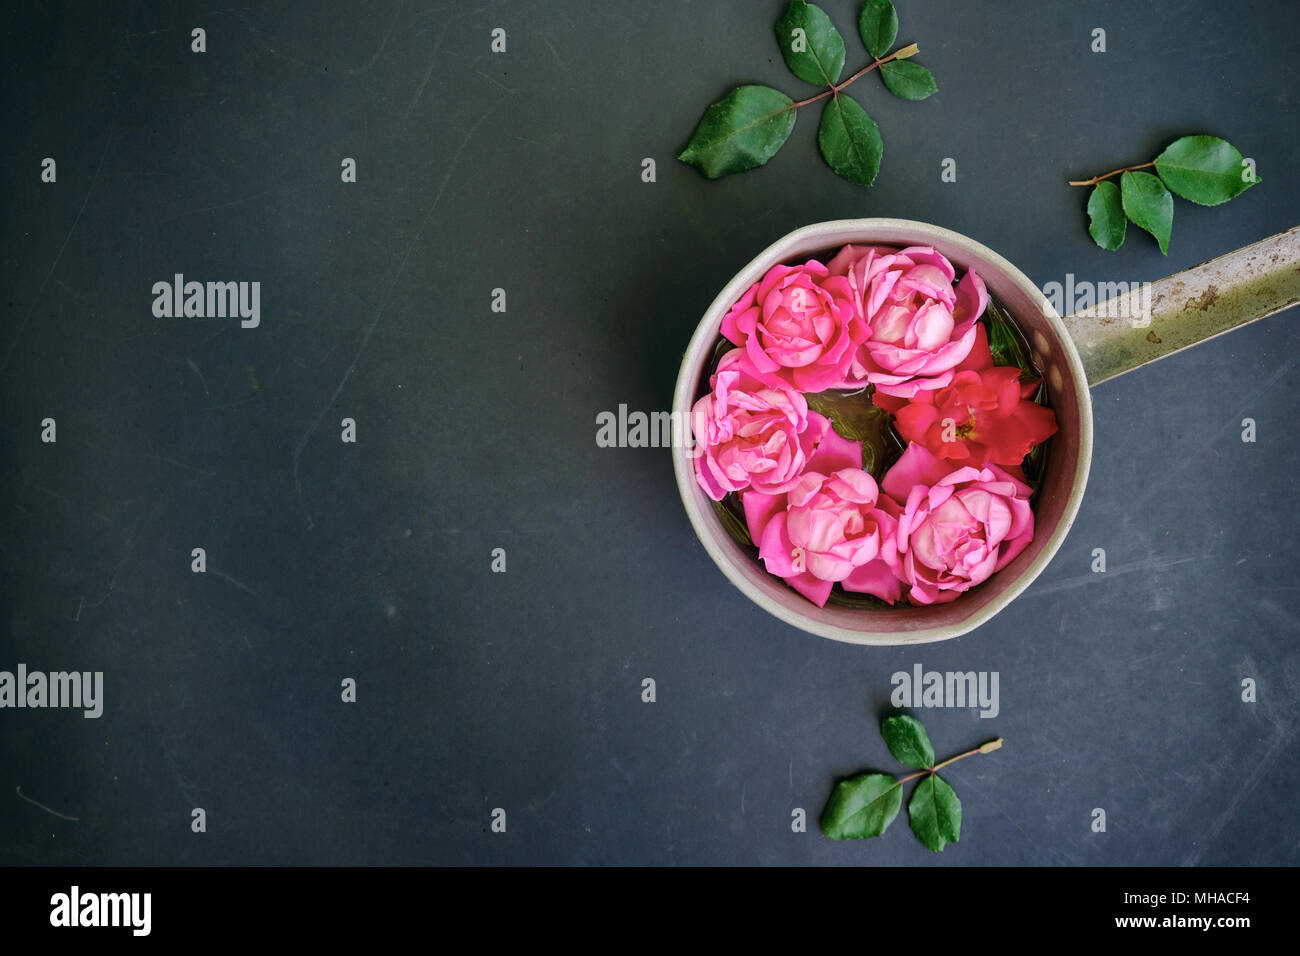 Romantisch rosa Rose Bild zeigt Rosen als Blumenschmuck gegen Vintage schwarzen Hintergrund. Stockfoto